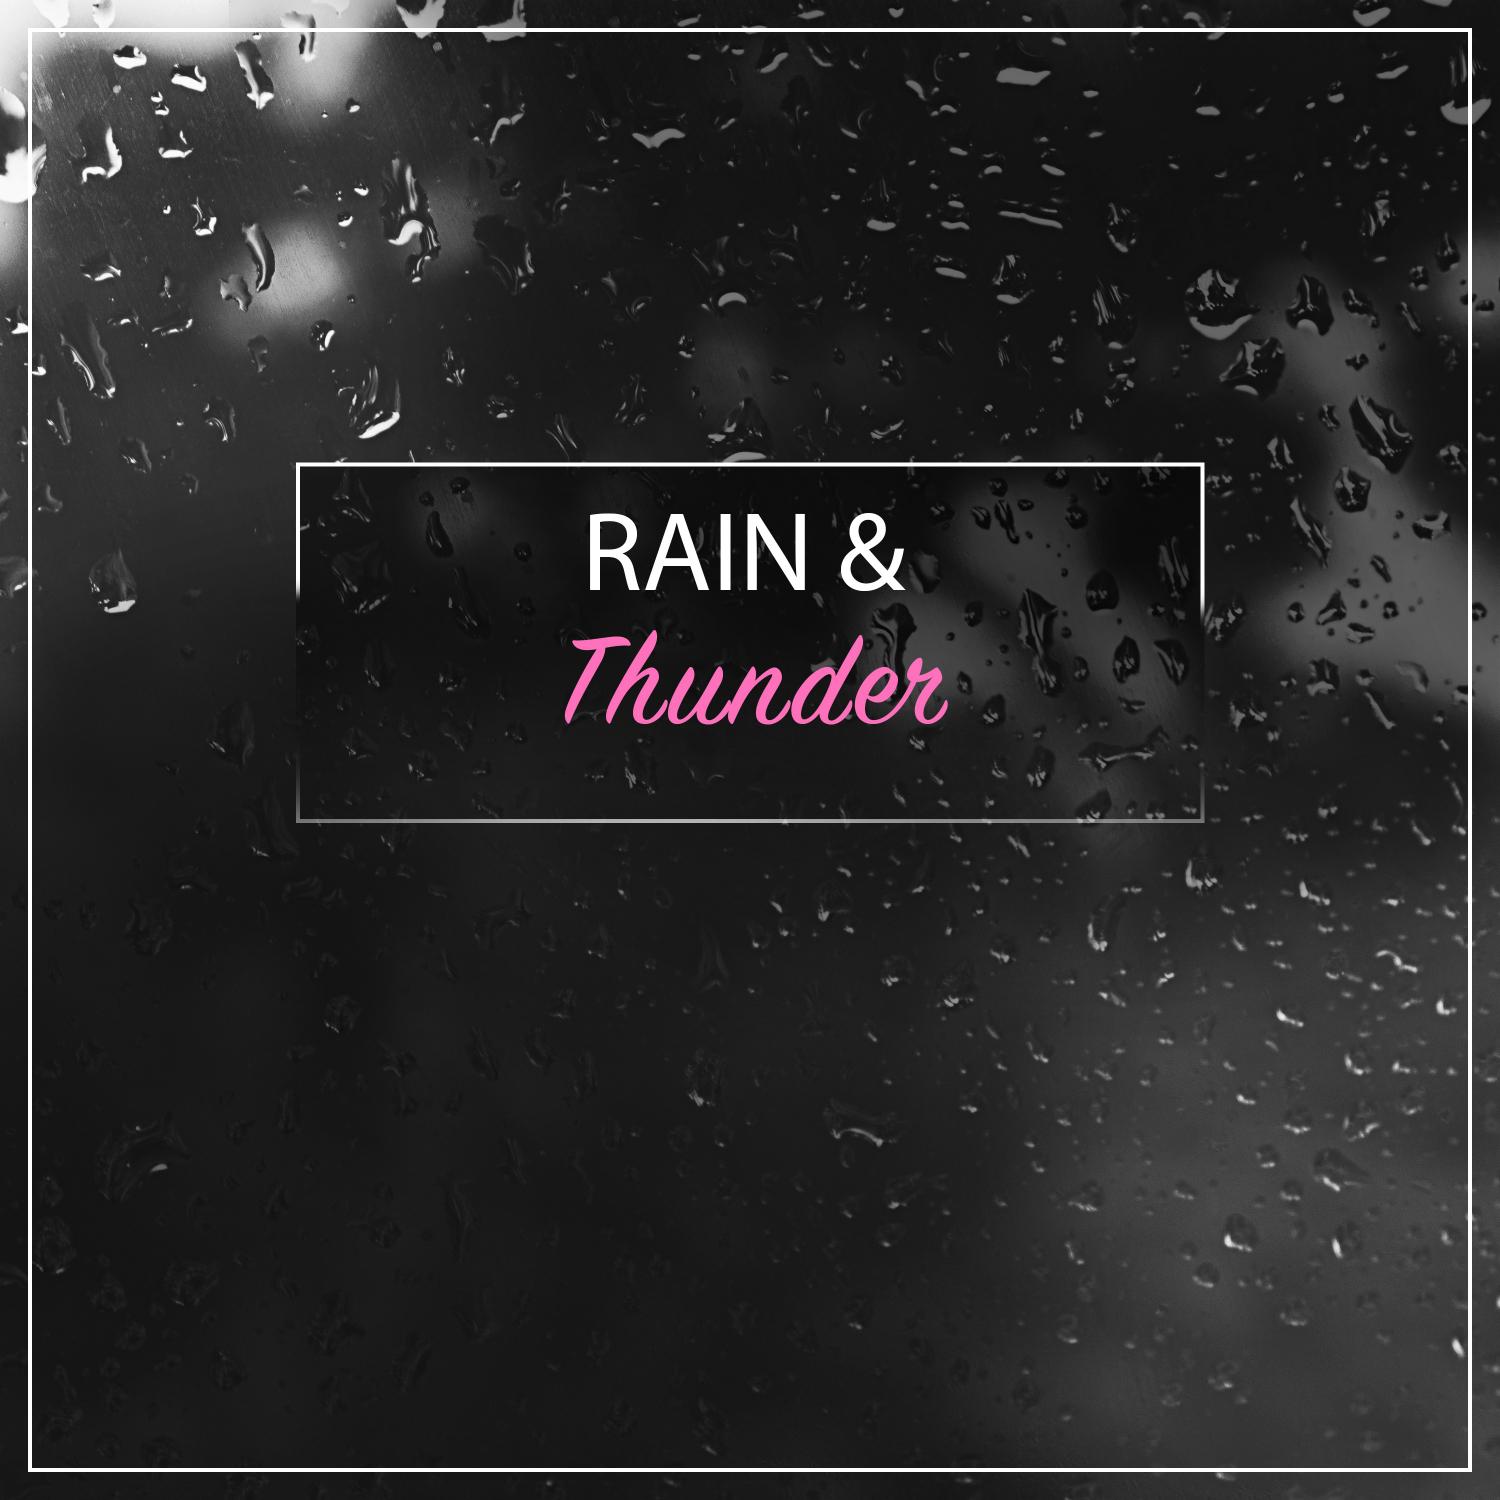 16 Amazing Rain and Thunder Sounds